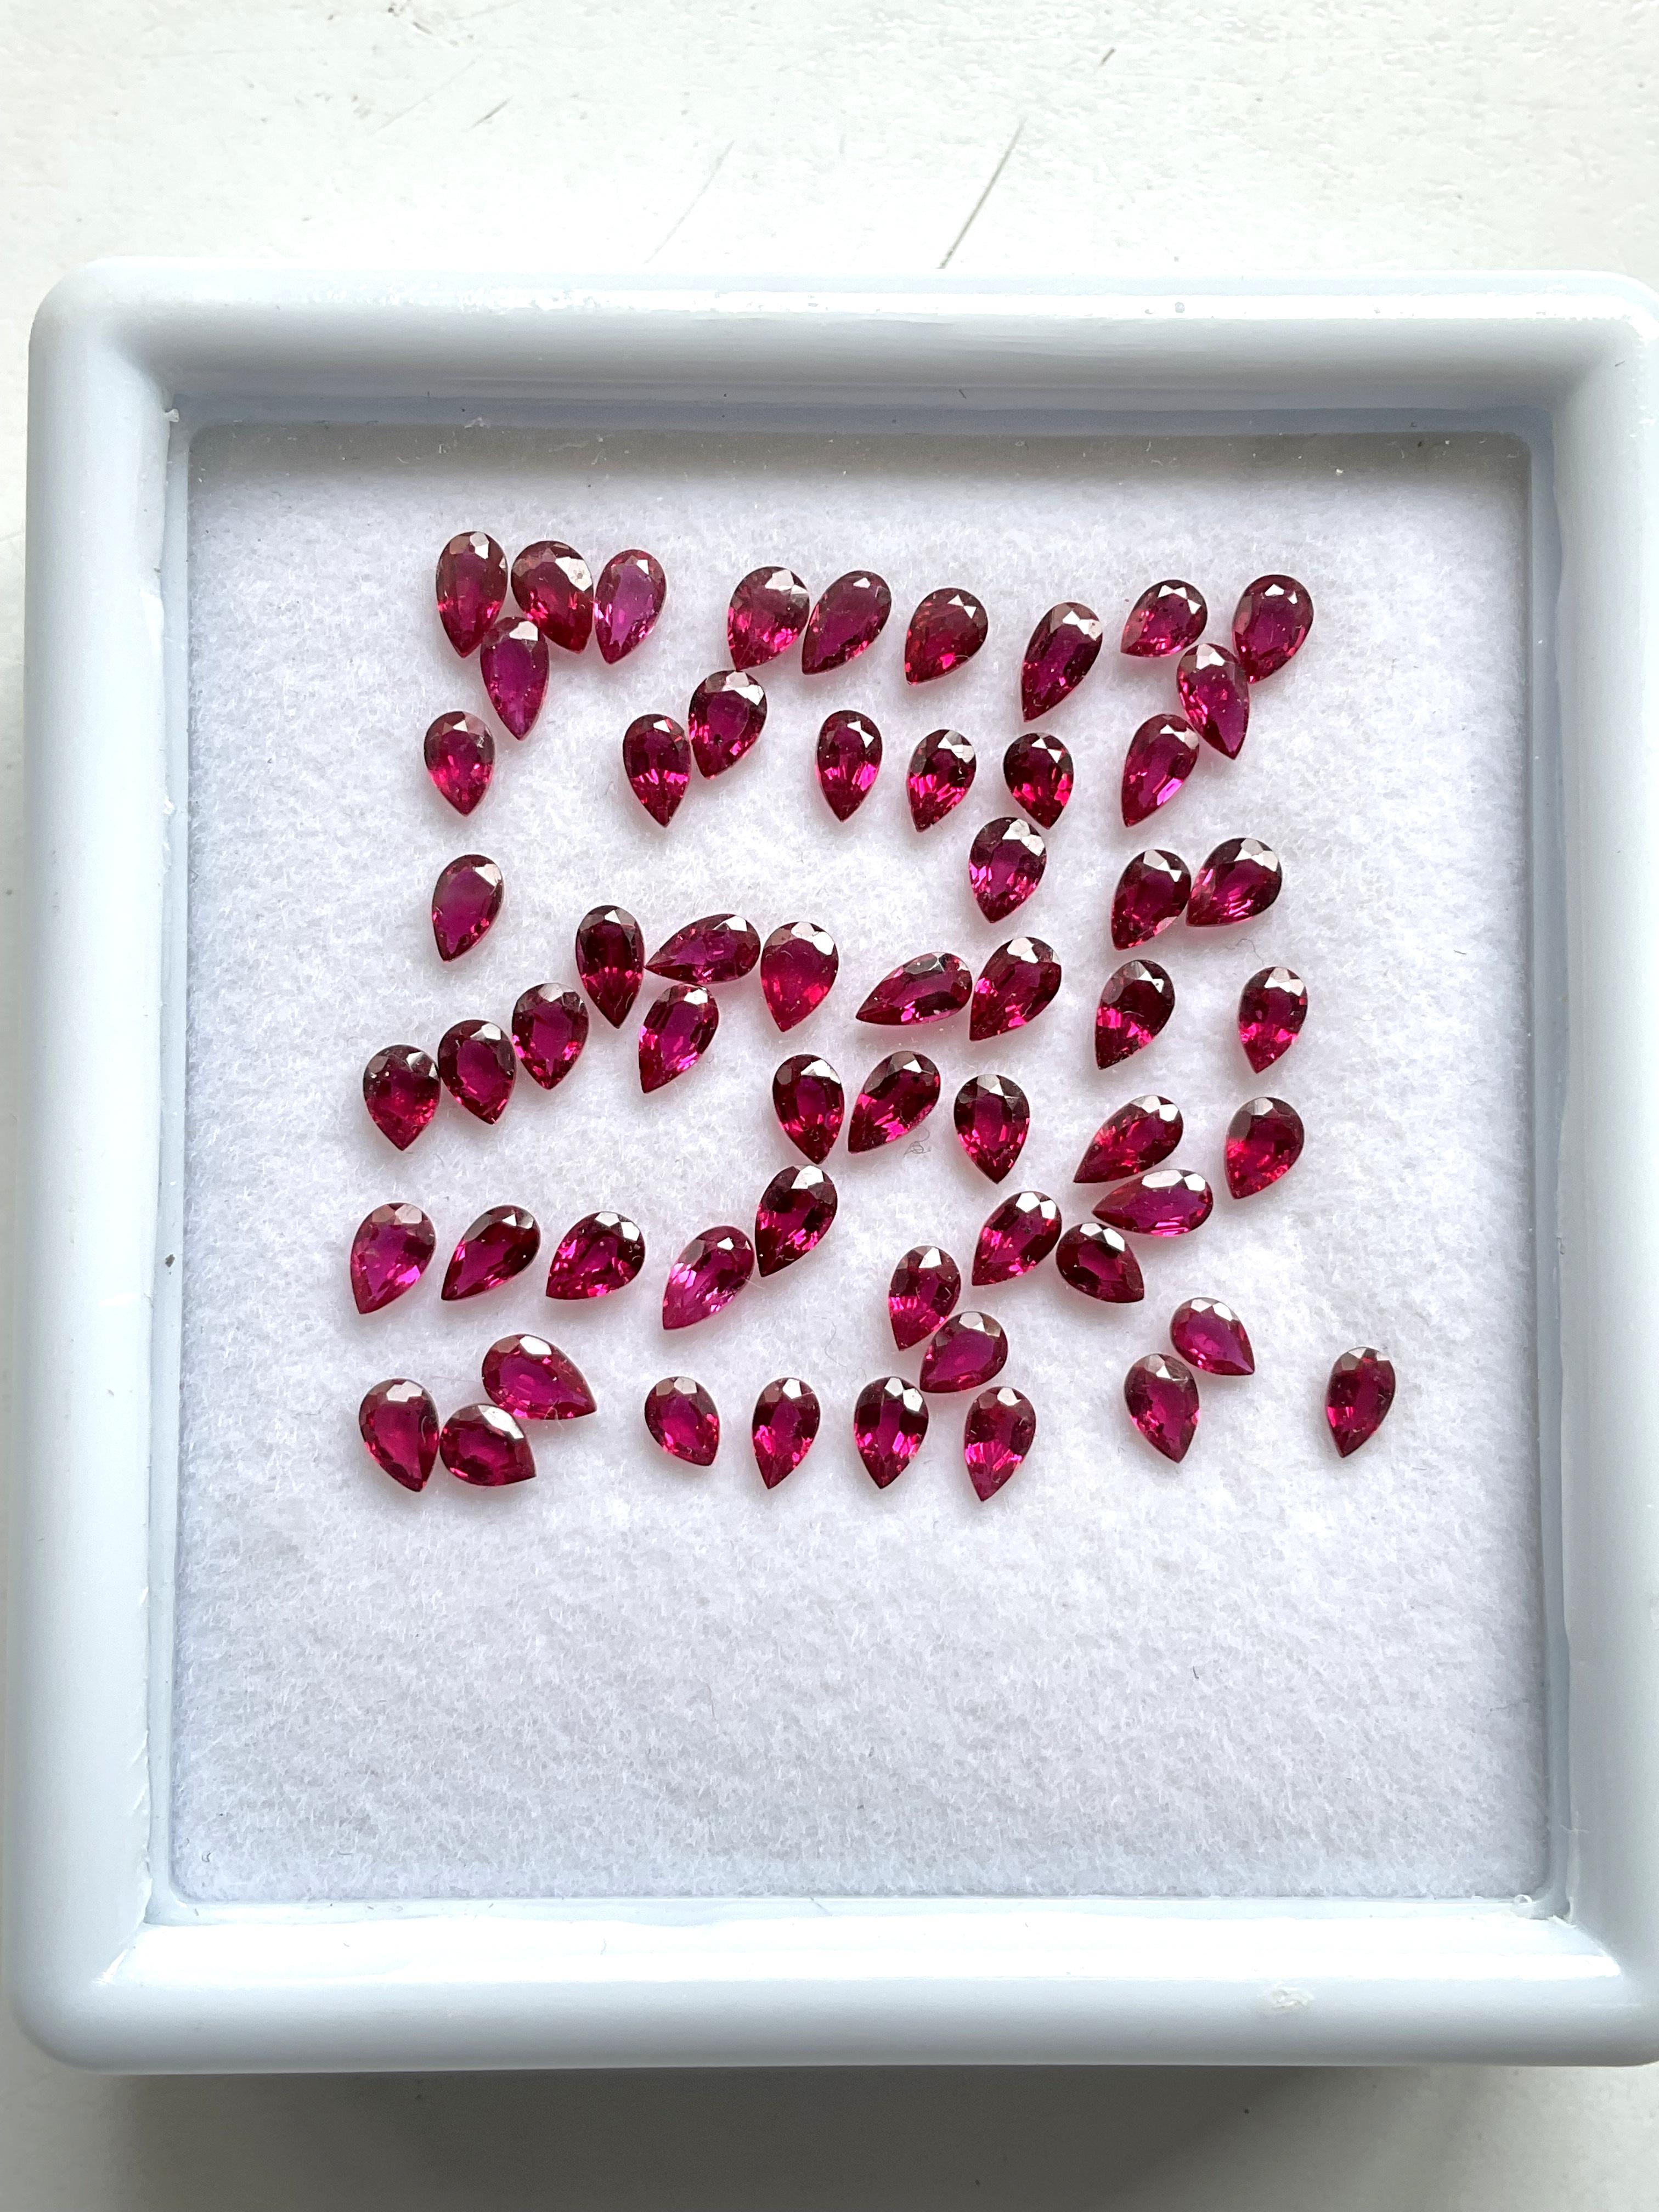 8.21 Carats Mozambique Ruby Top Quality Pear Cut stone No Heat Natural Gemstone (Rubis du Mozambique de qualité supérieure, taille poire, sans chaleur) en vente 1